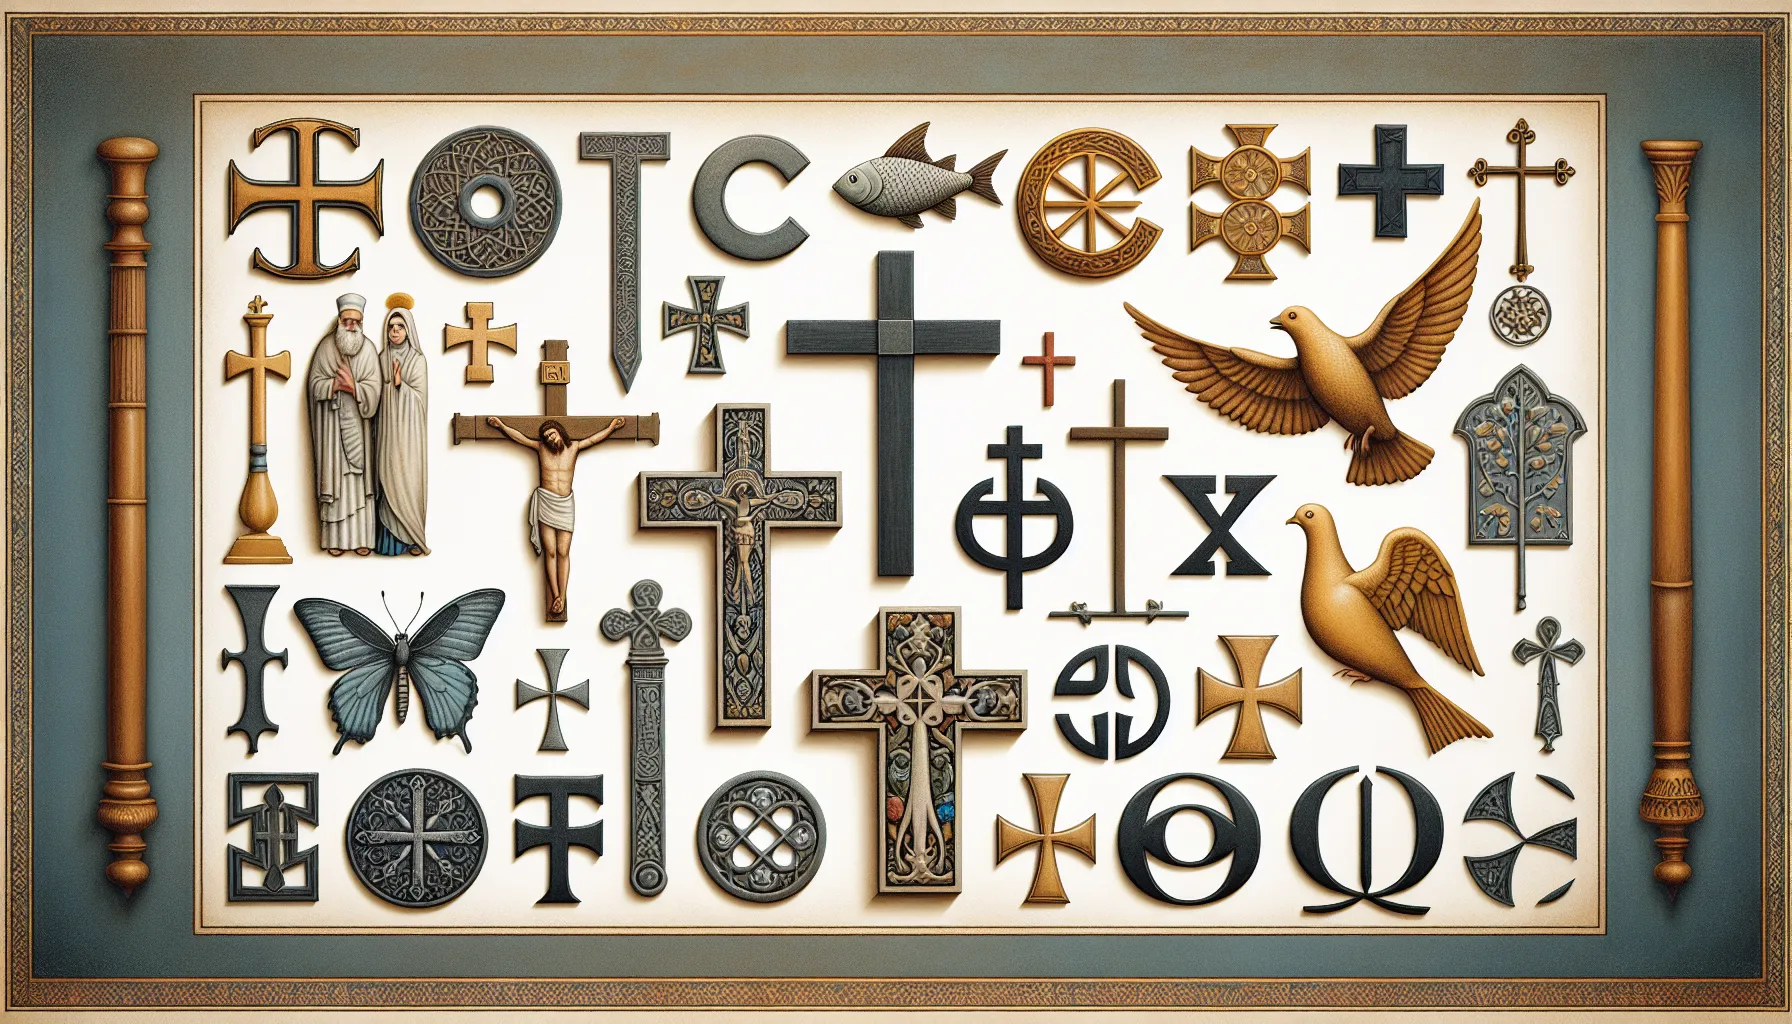 Imagen representativa de diferentes símbolos religiosos para ilustrar la diversidad de denominaciones cristianas y sus razones históricas y teológicas.